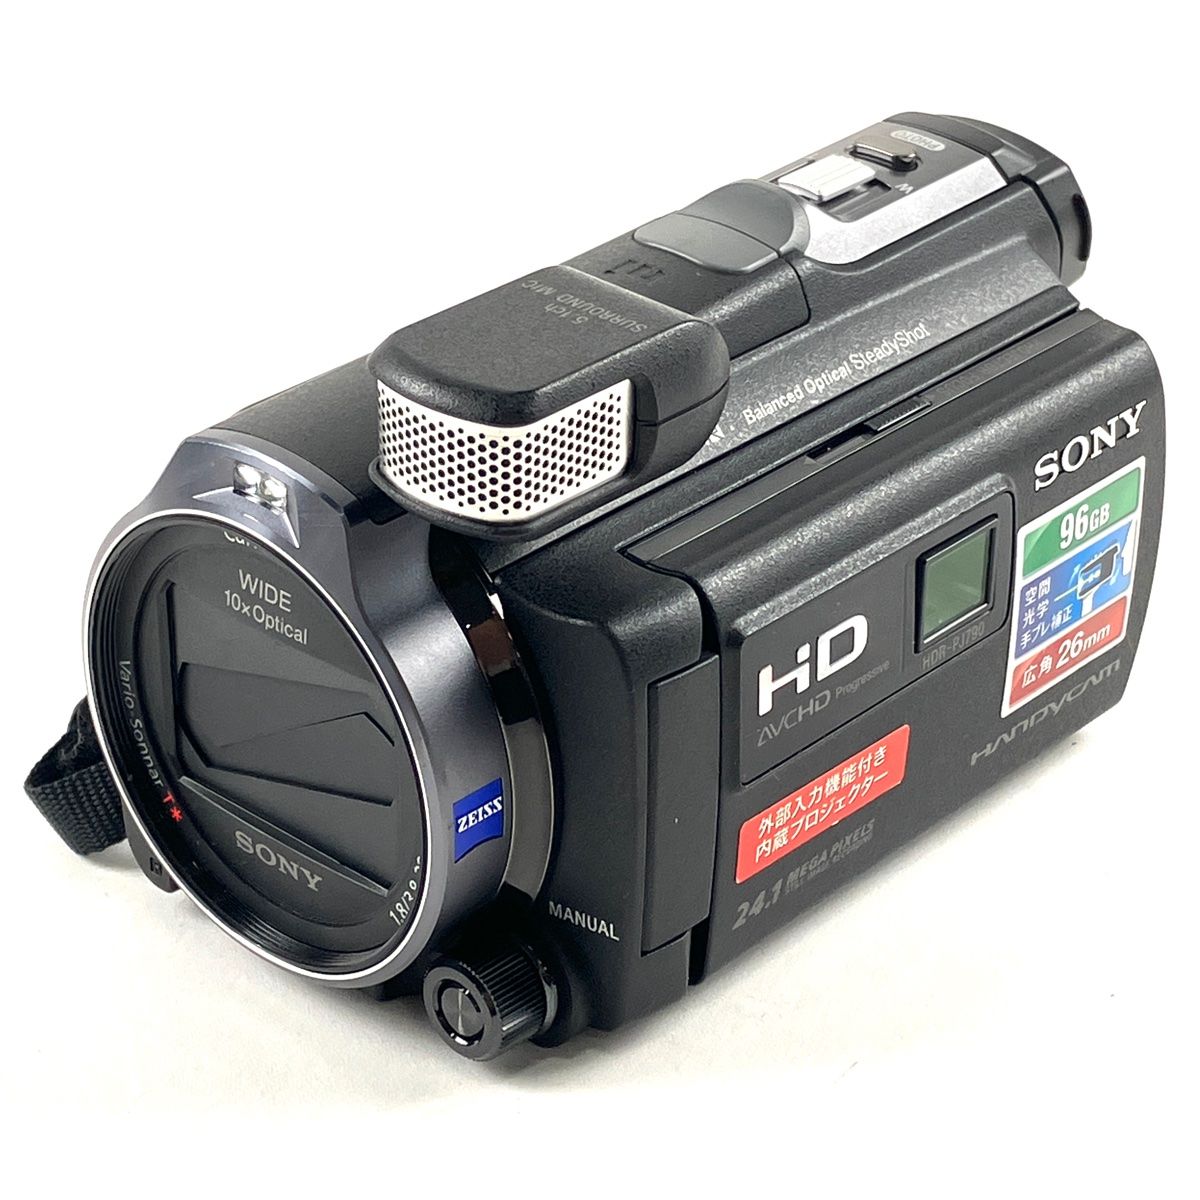 ソニー SONY HDR-PJ790V デジタルビデオカメラ 【中古】